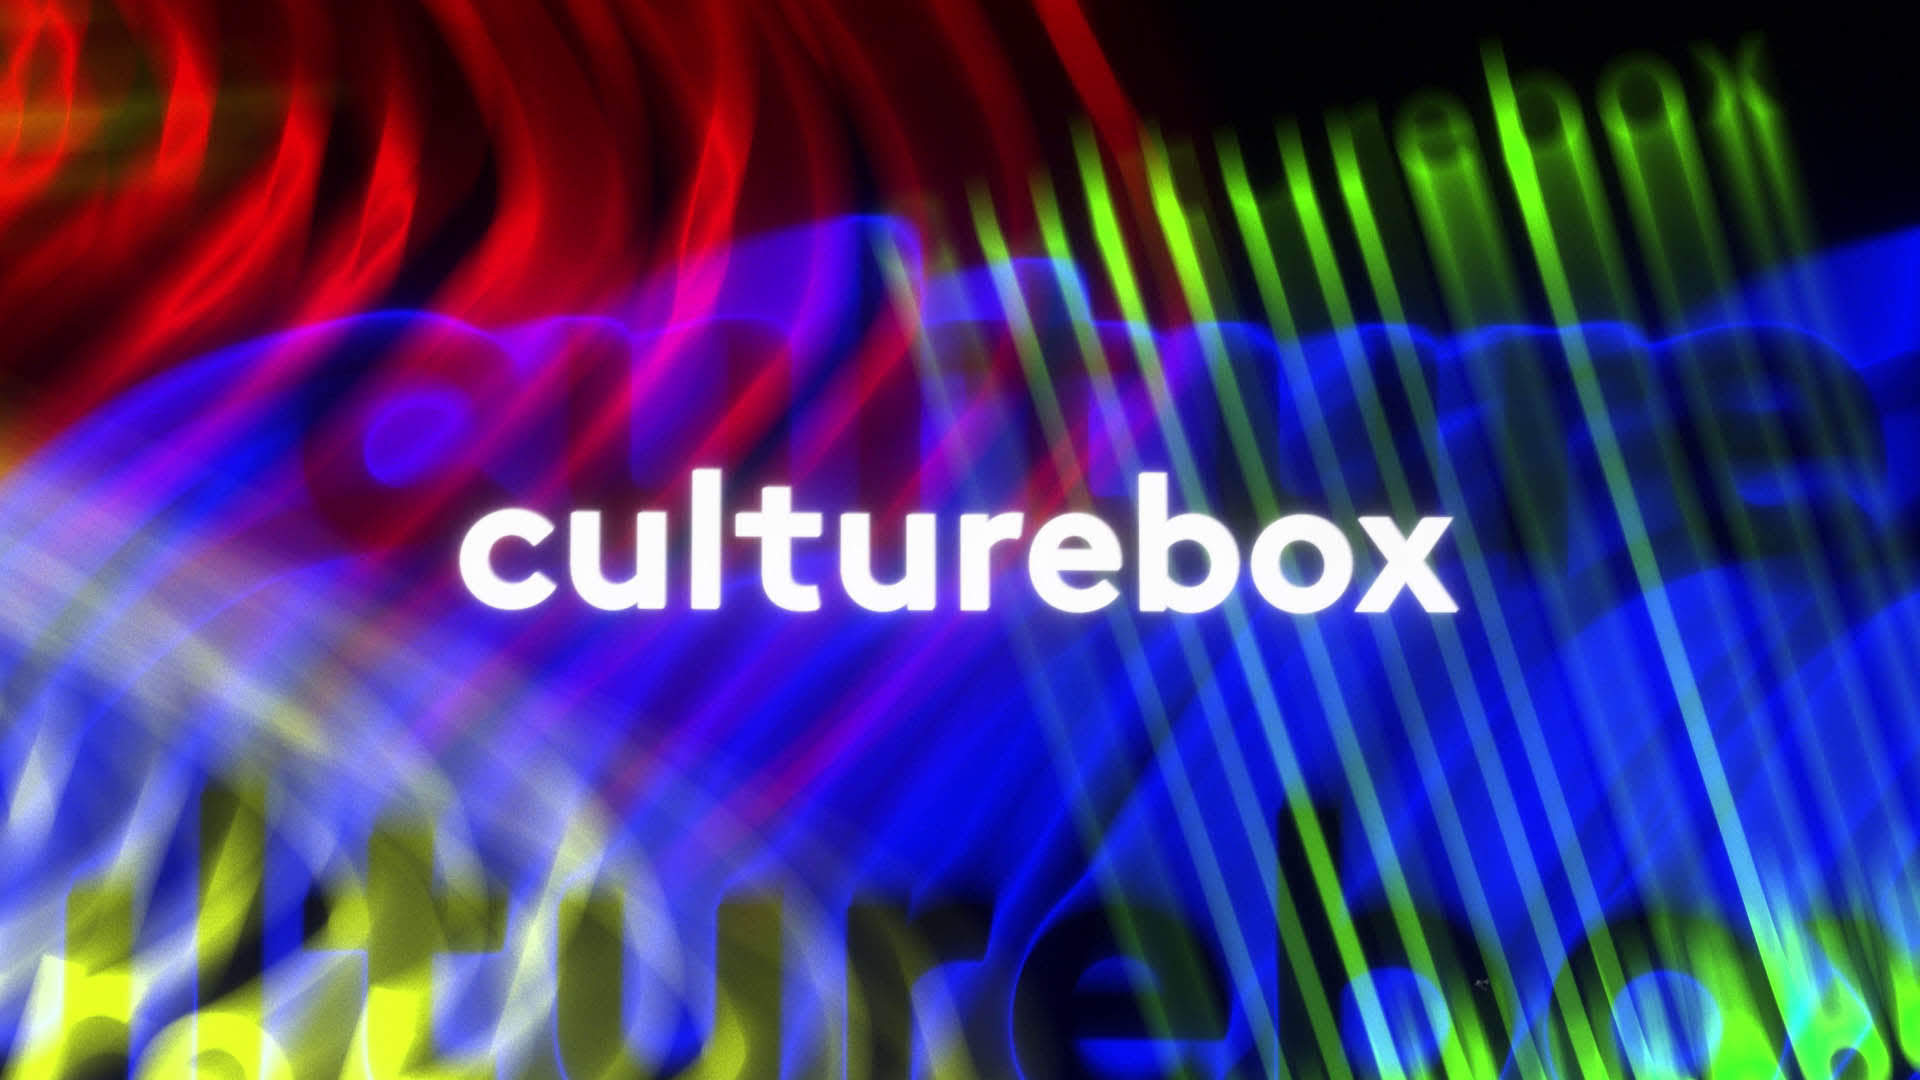 Félix Farjas - Culturebox